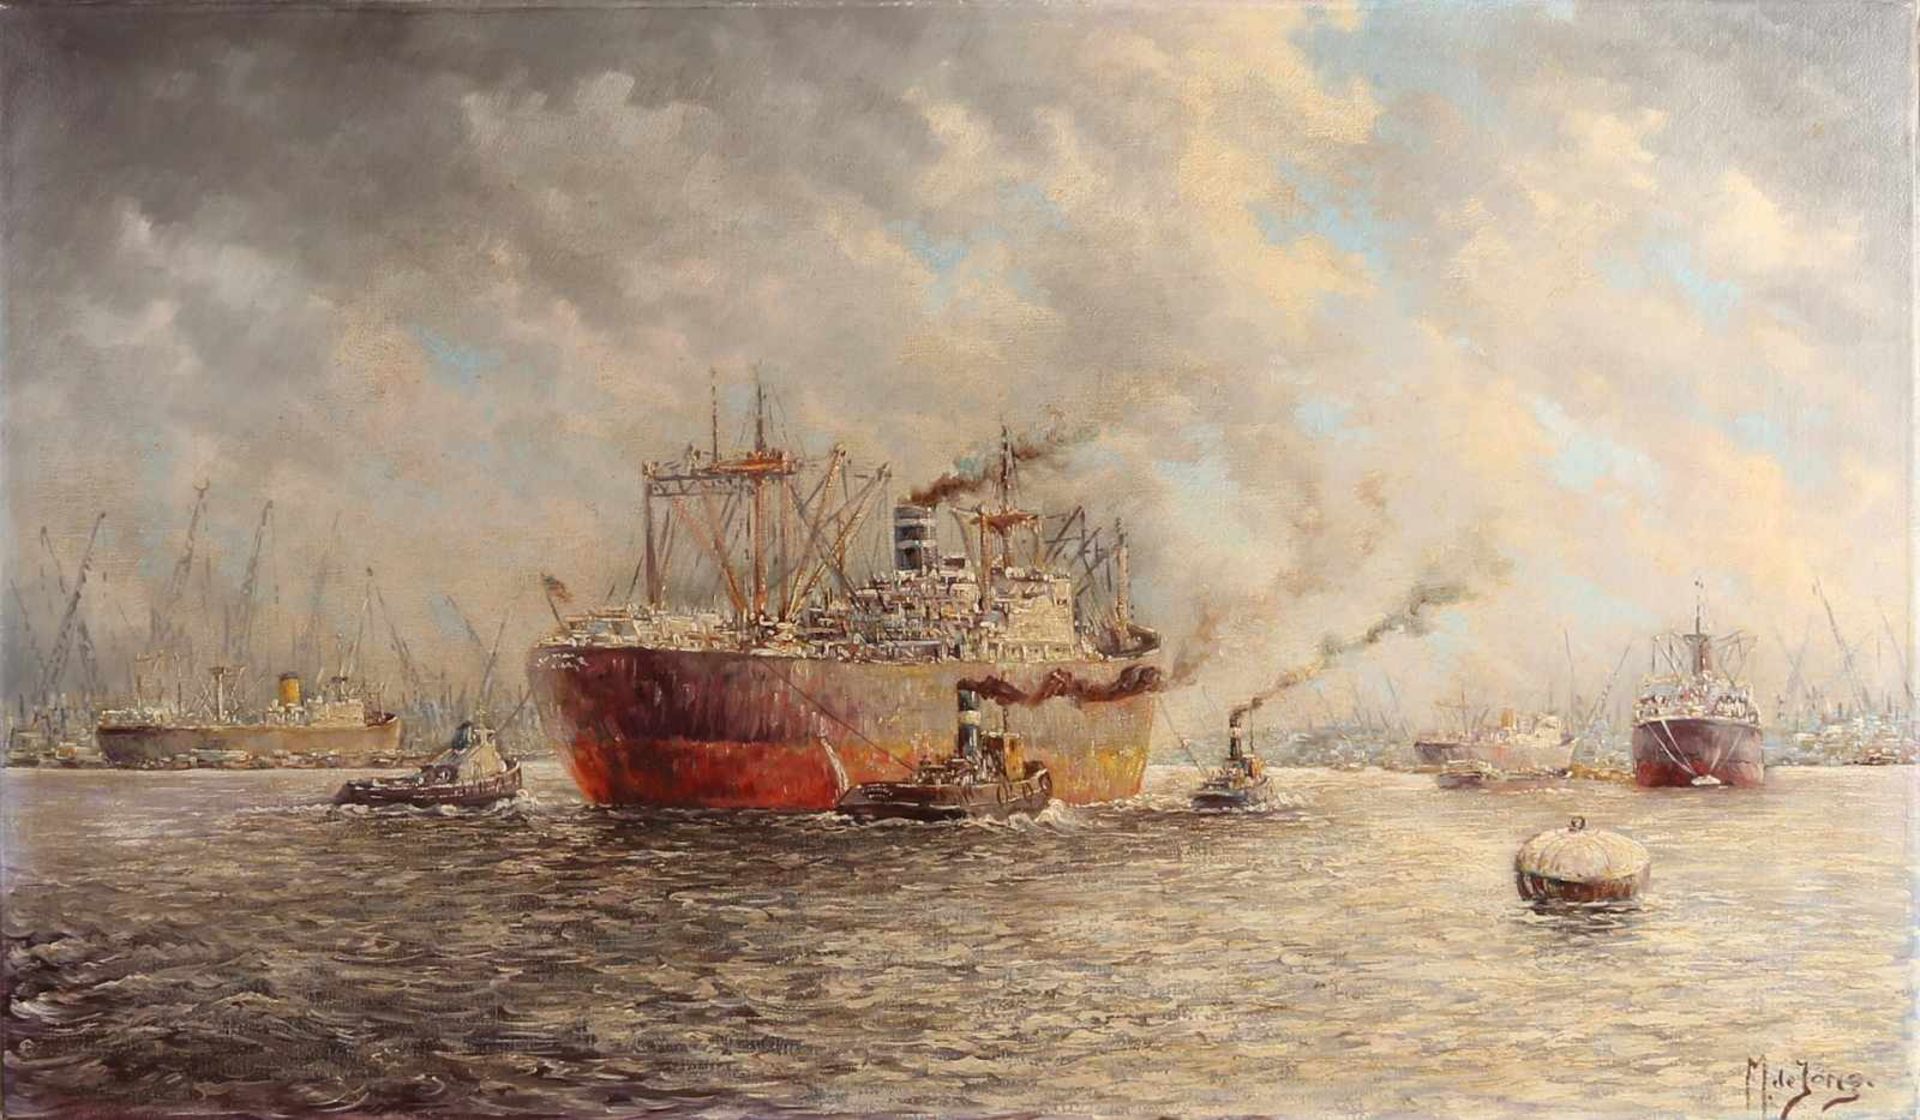 M. de Jong. 20. Jahrhundert. Rotterdamer Hafen mit Frachtschiffen. Öl auf Leinen. Abmessungen: